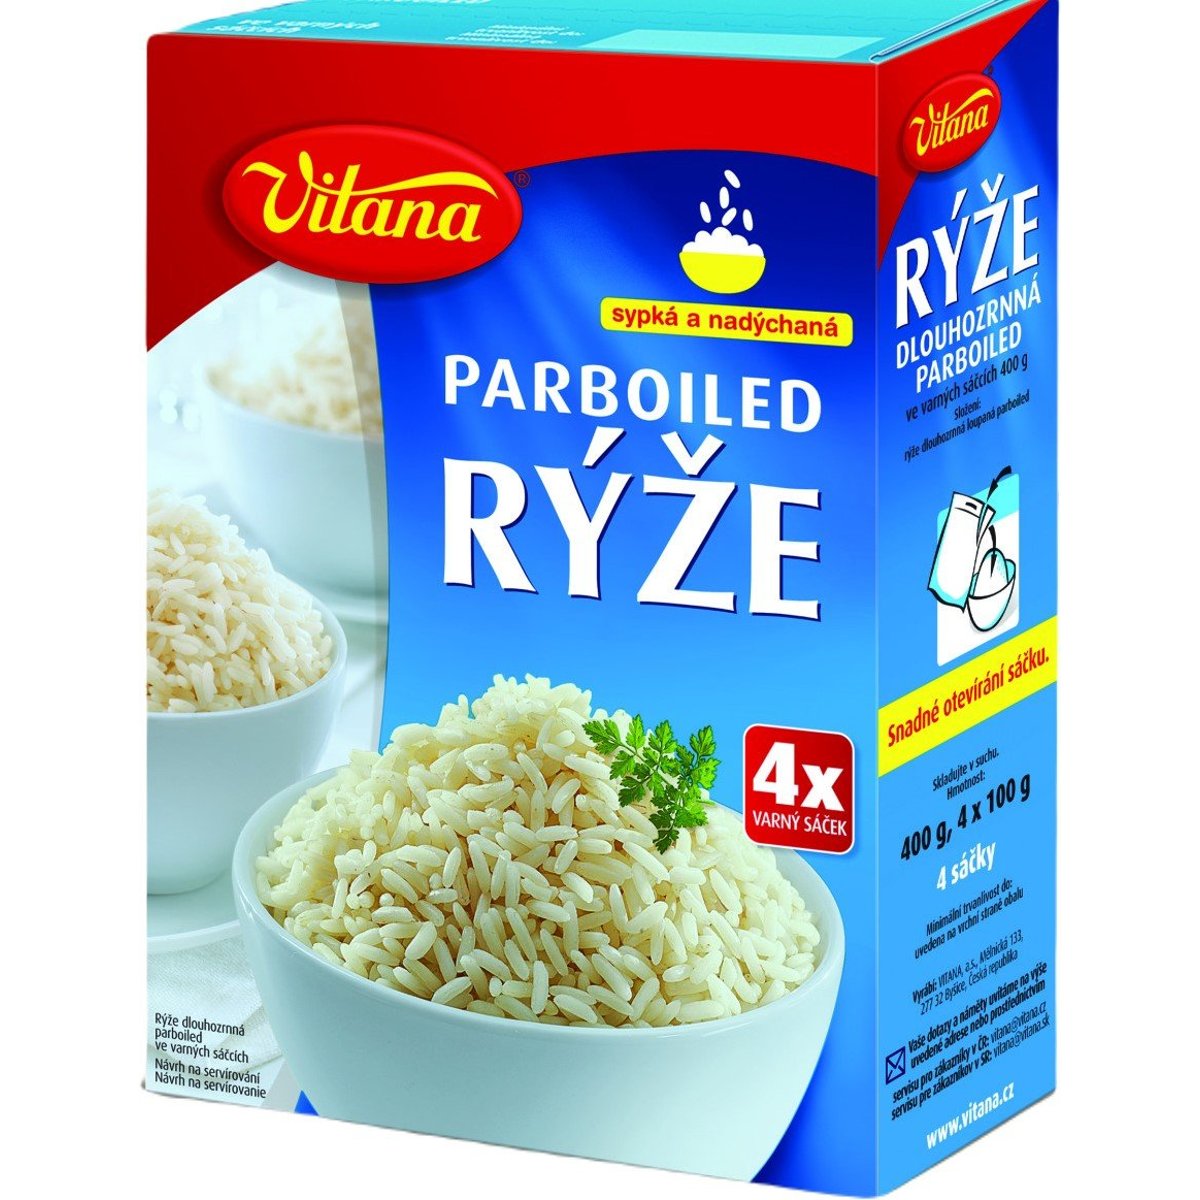 Vitana Rýže parboiled ve varných sáčcích